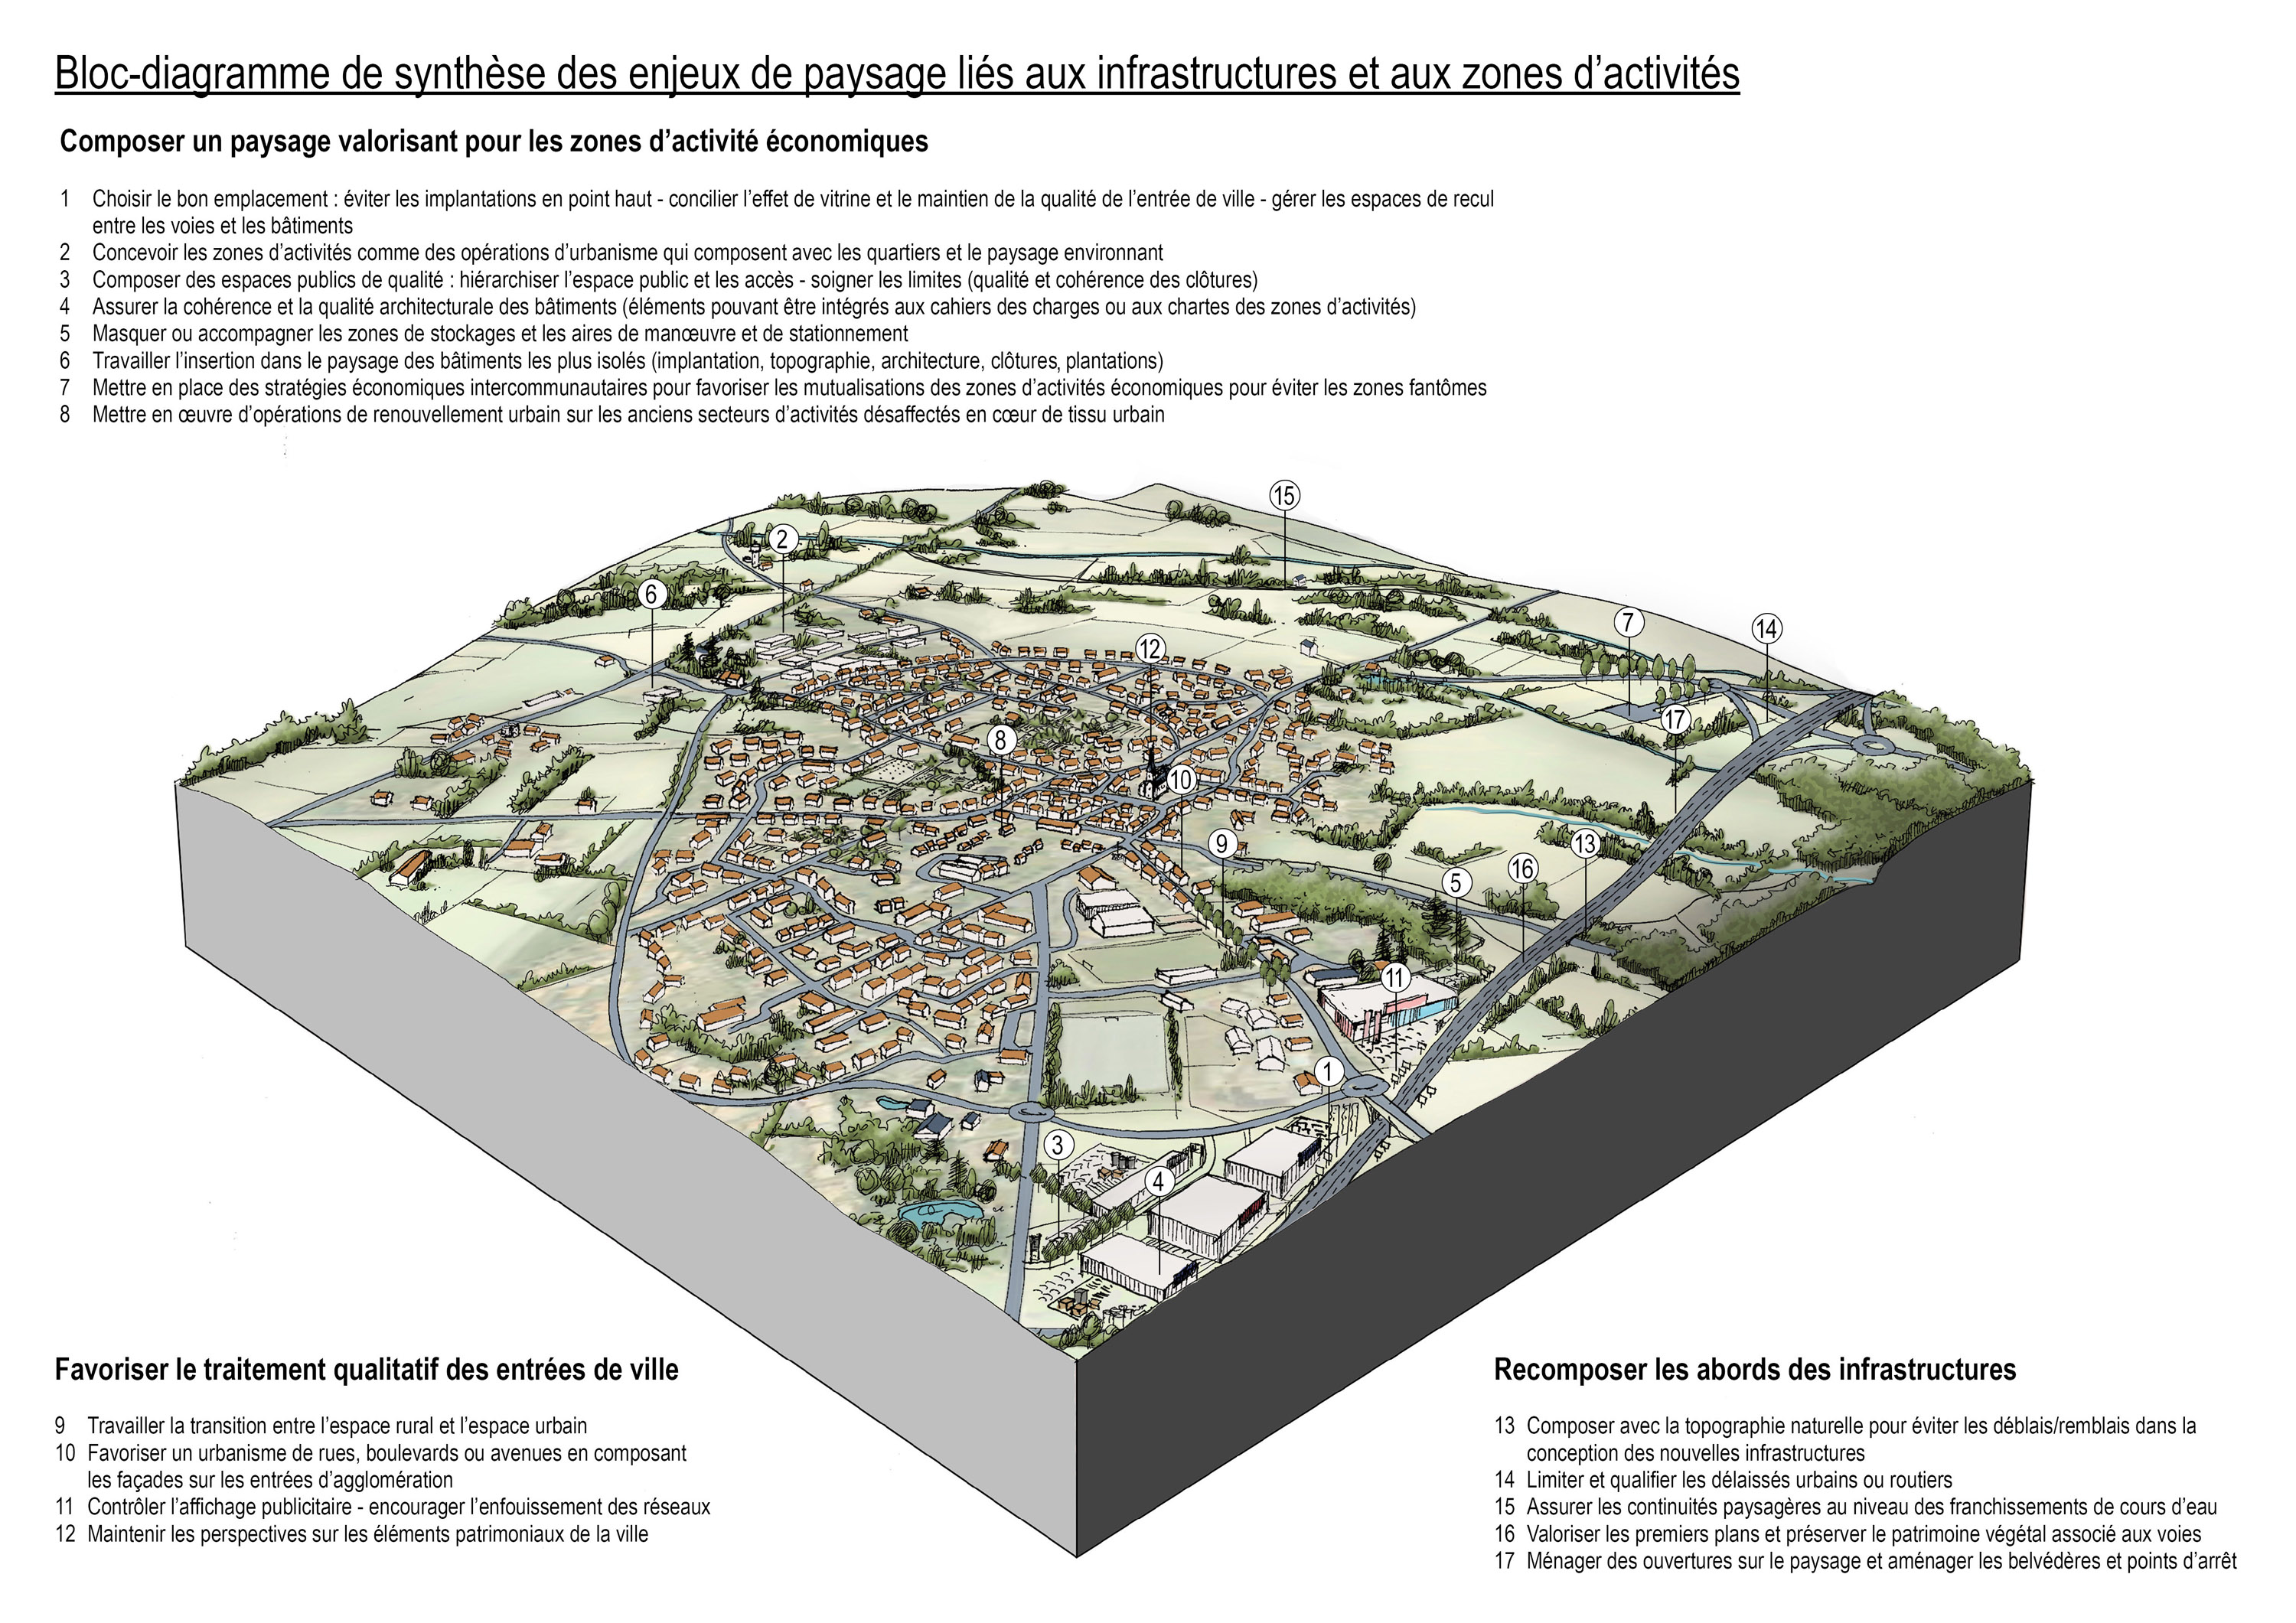 Bloc diagramme de synthèse des enjeux de paysage liés aux infrastructures et aux zones d'activités en grand format (nouvelle fenêtre)